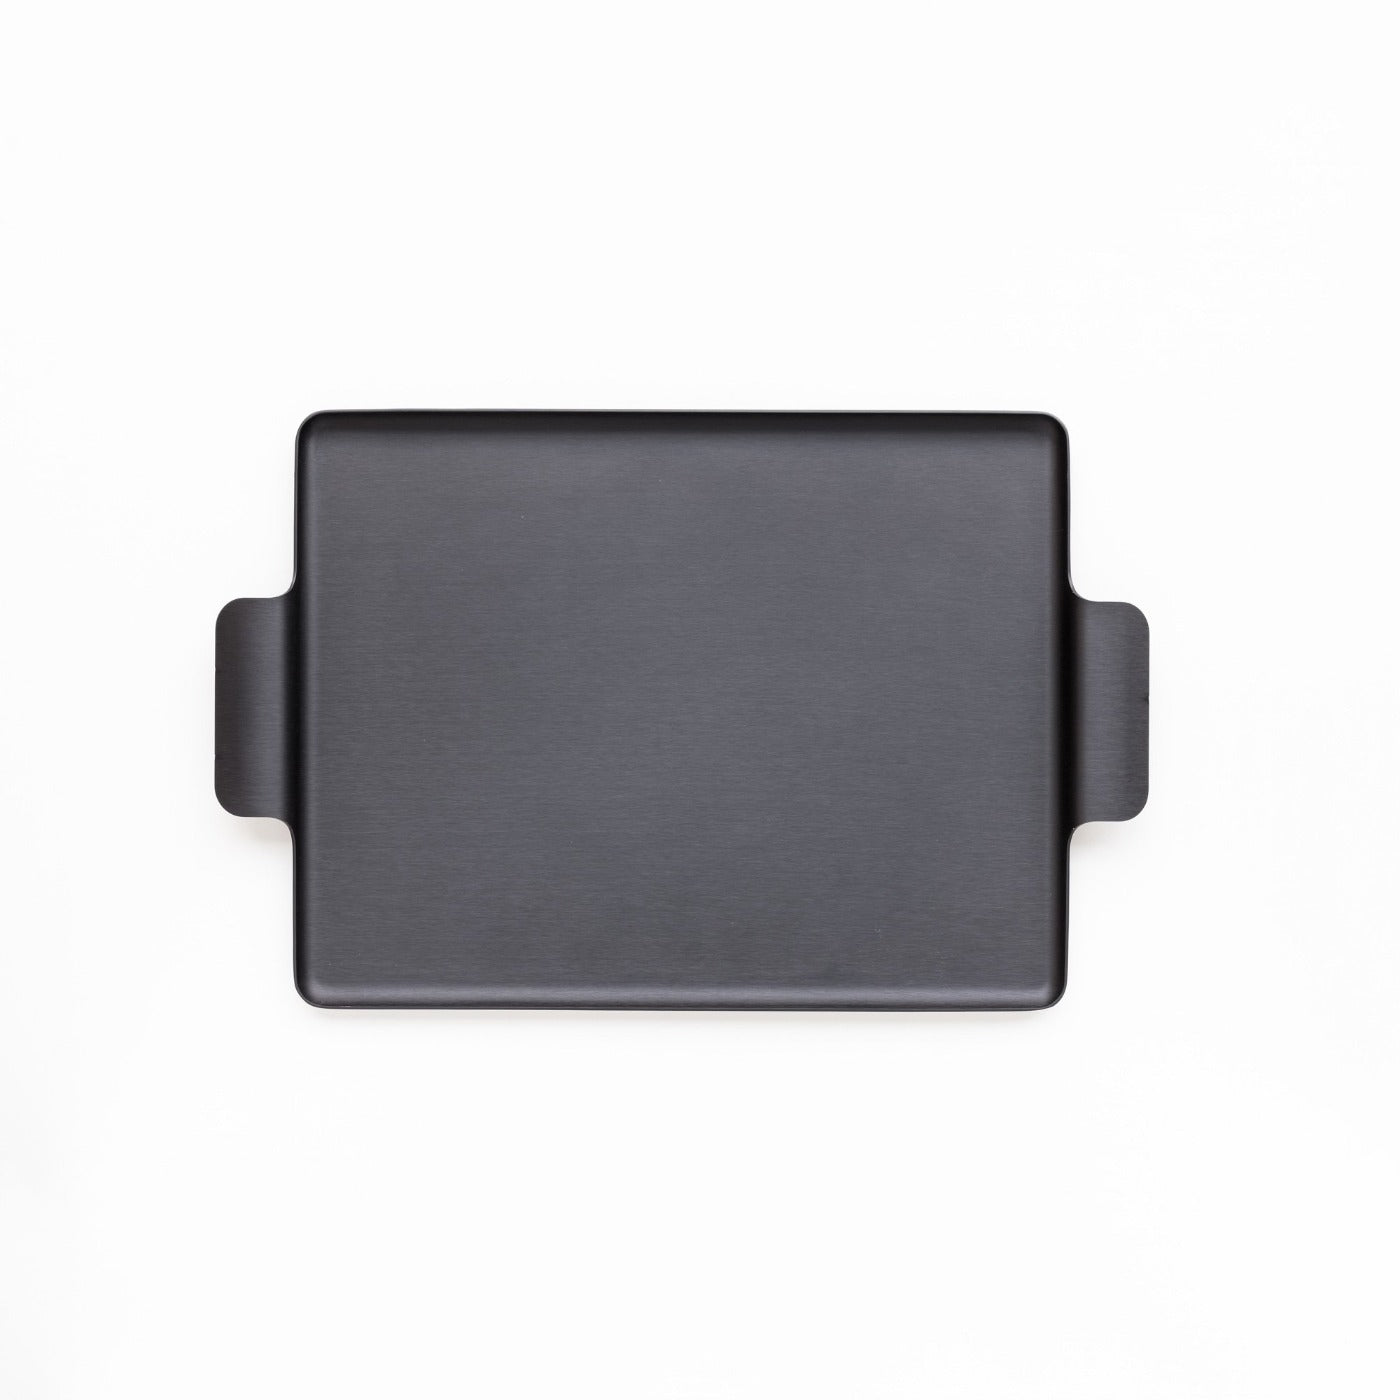 Kaymet 12.5inch metal tray in black